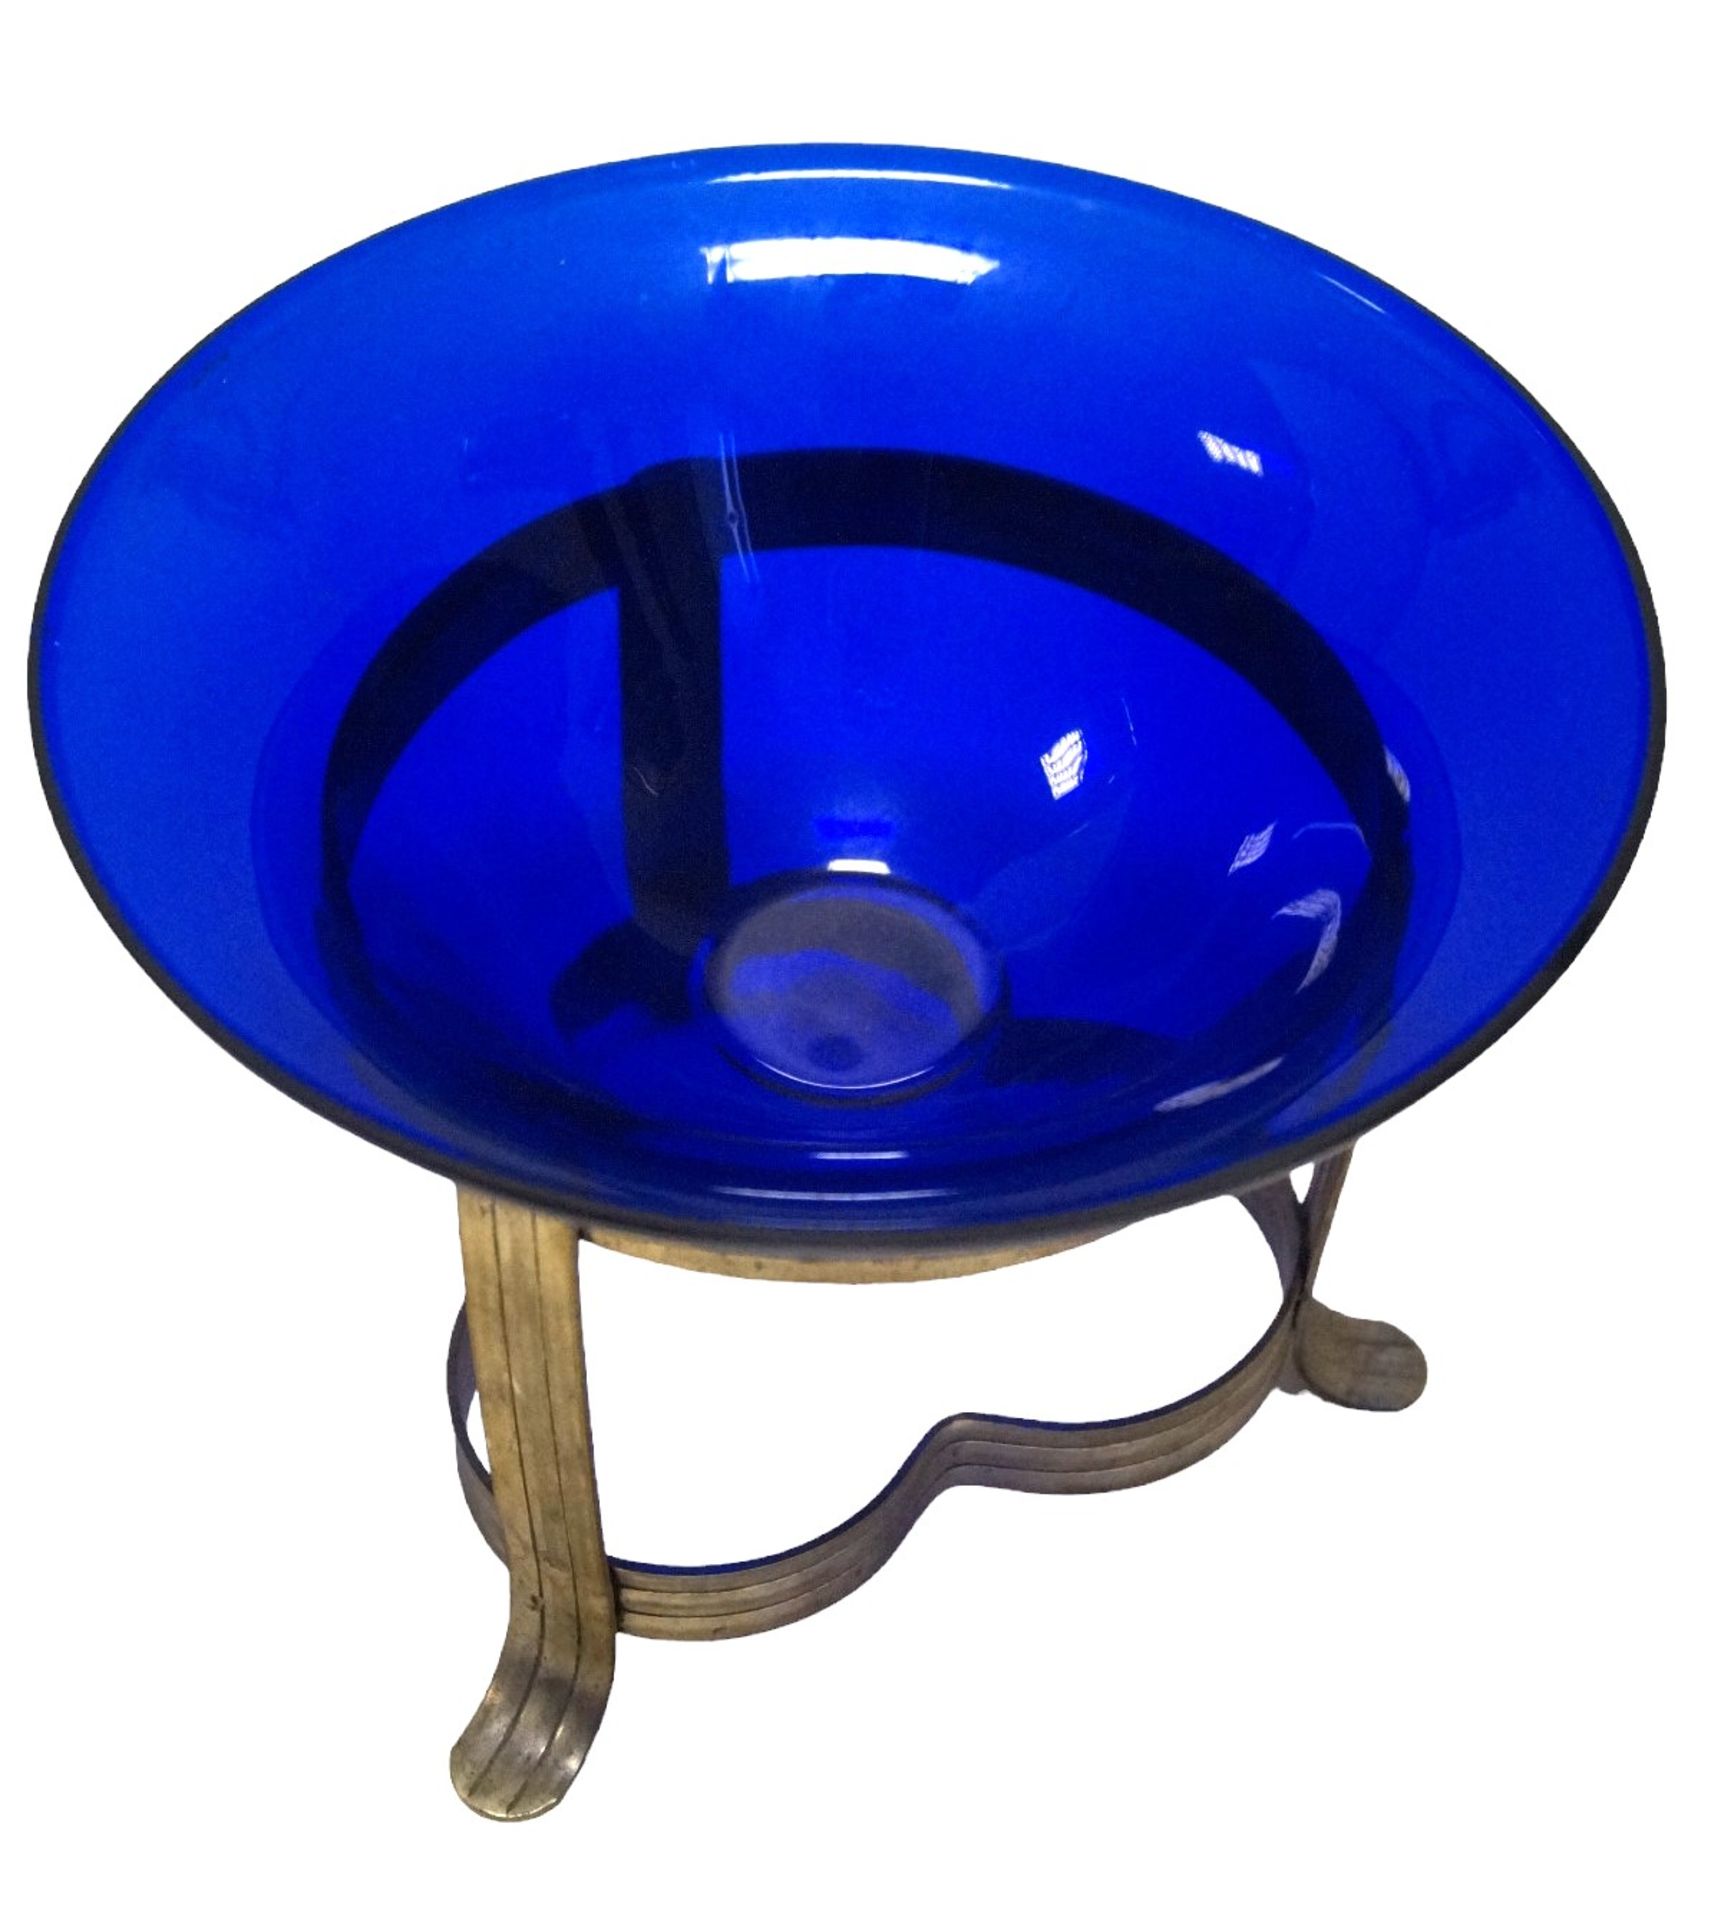 Wohl neuzeitliche, blaue Glasschale auf dreipassigem Messinggestell; Metall leicht berieben, ansons - Image 2 of 2